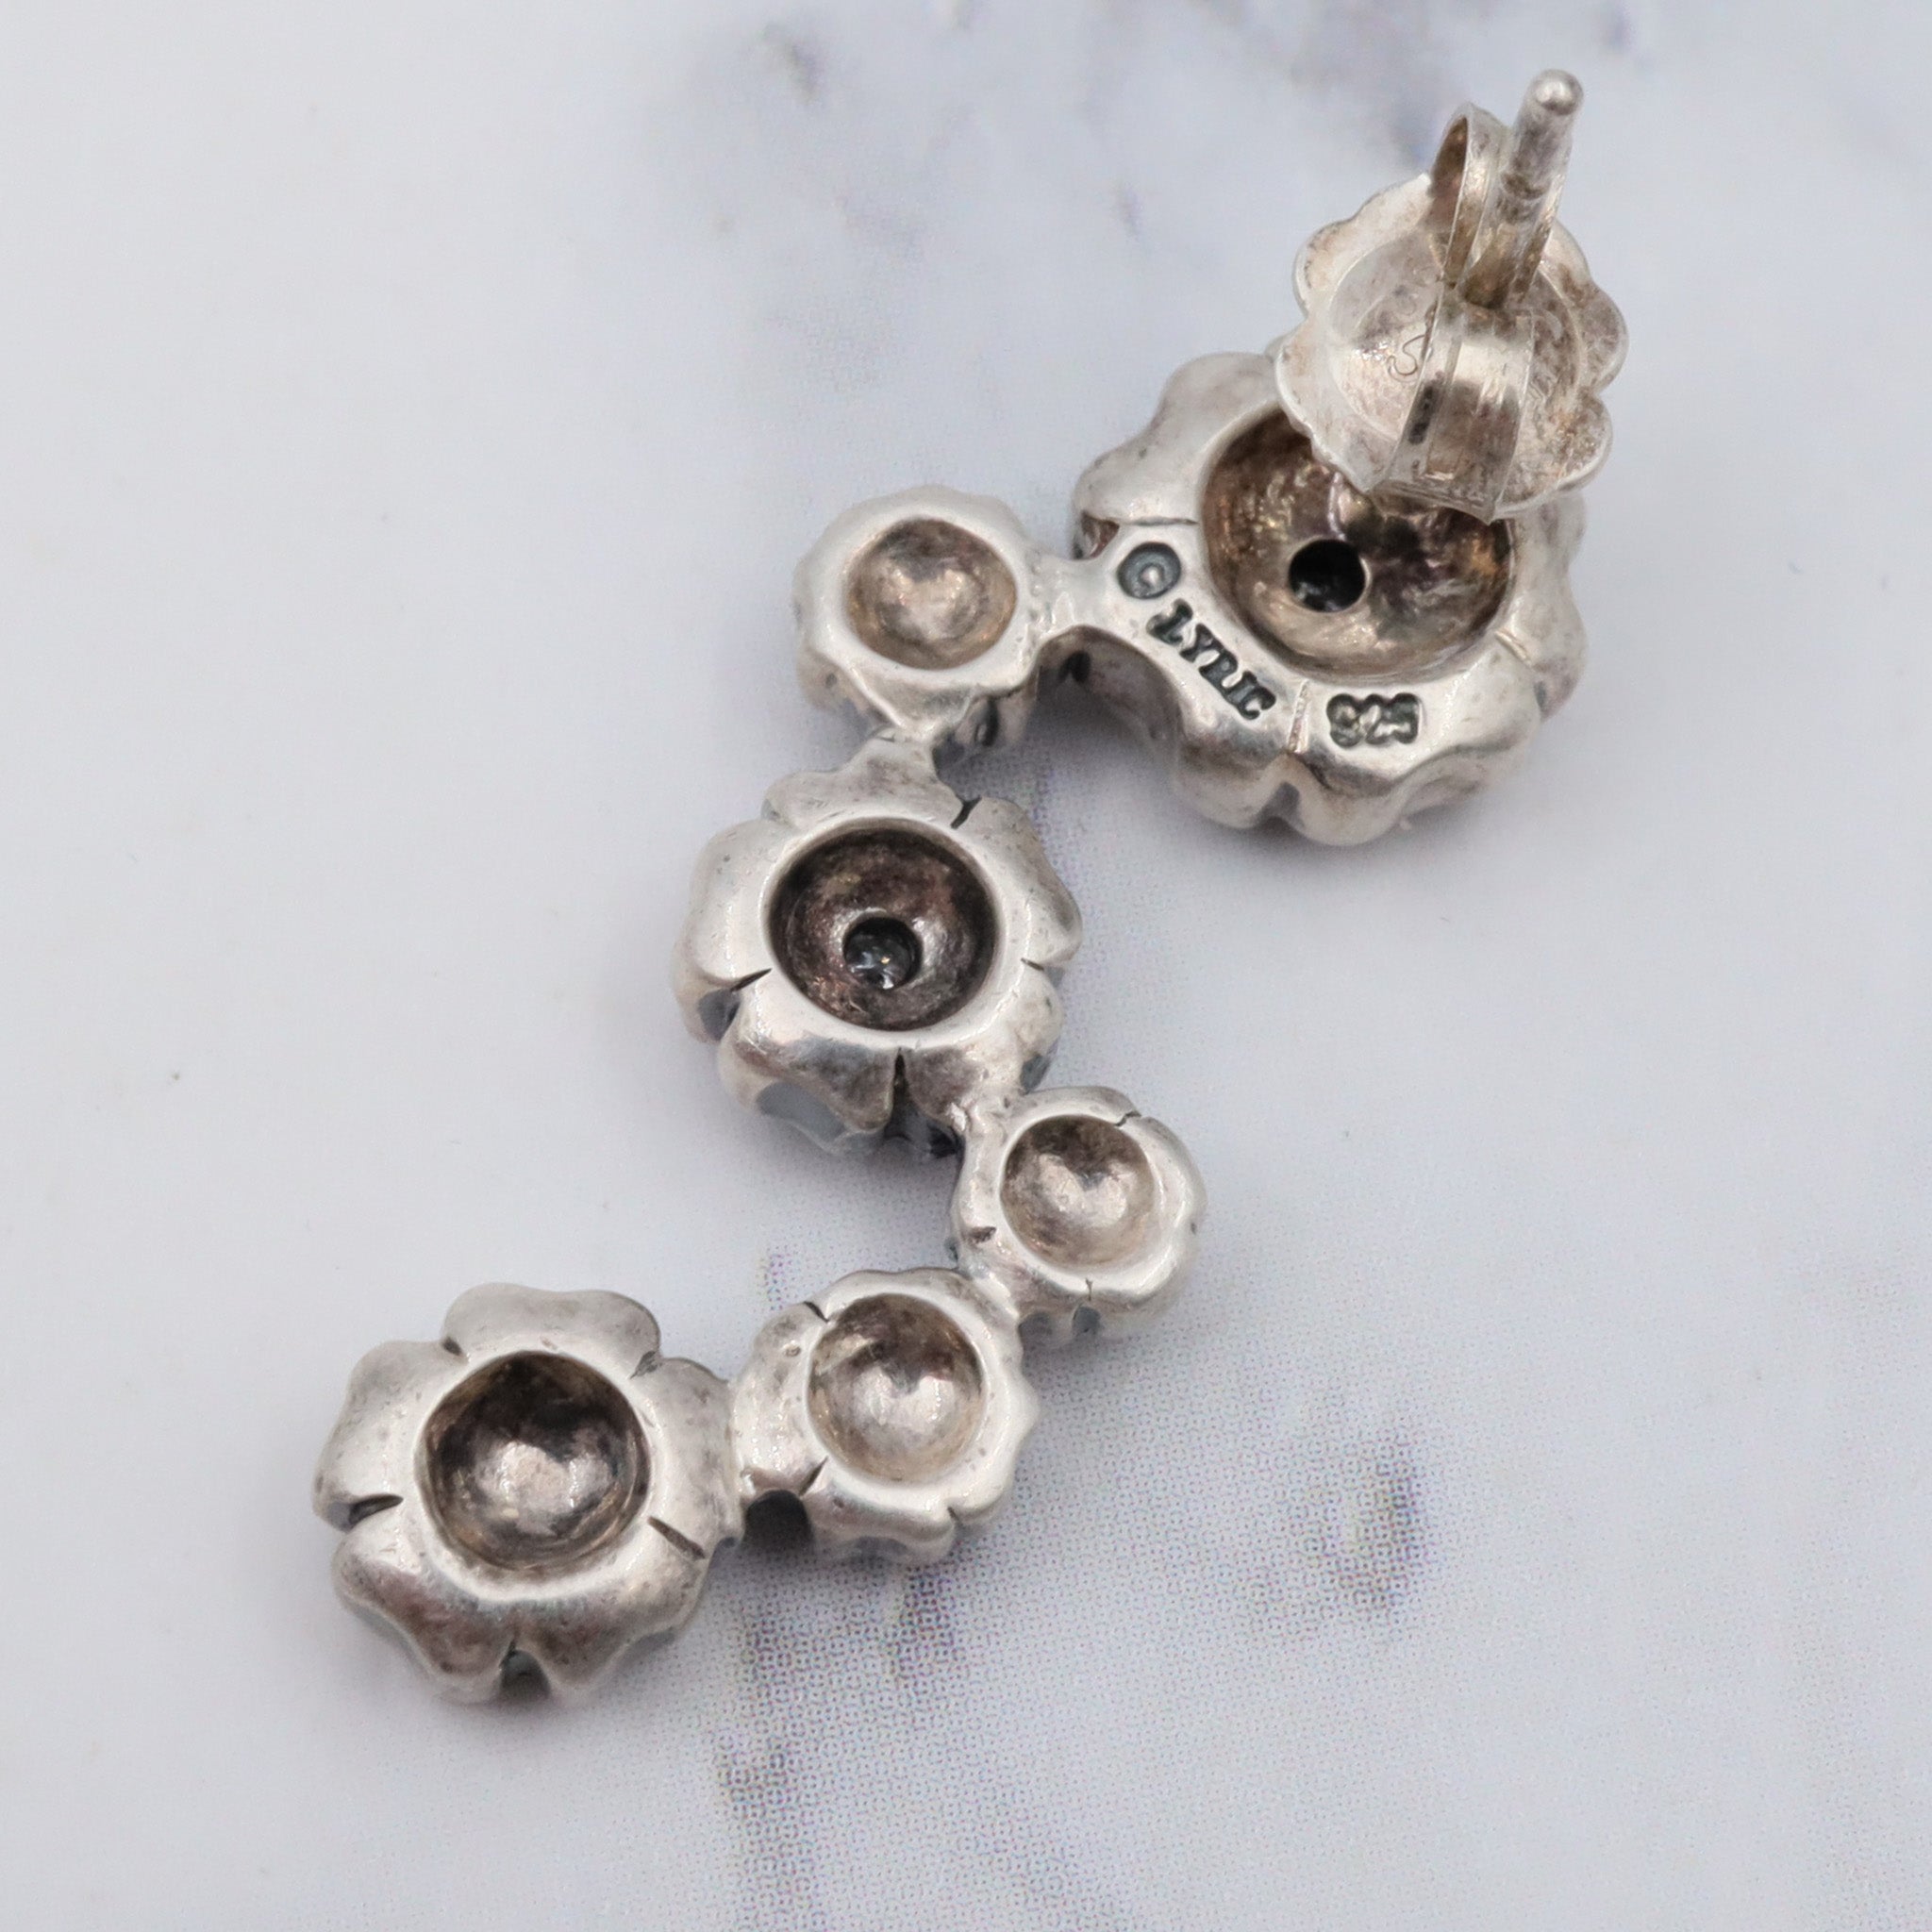 Vintage sterling & diamond flower earrings by “Lyric”